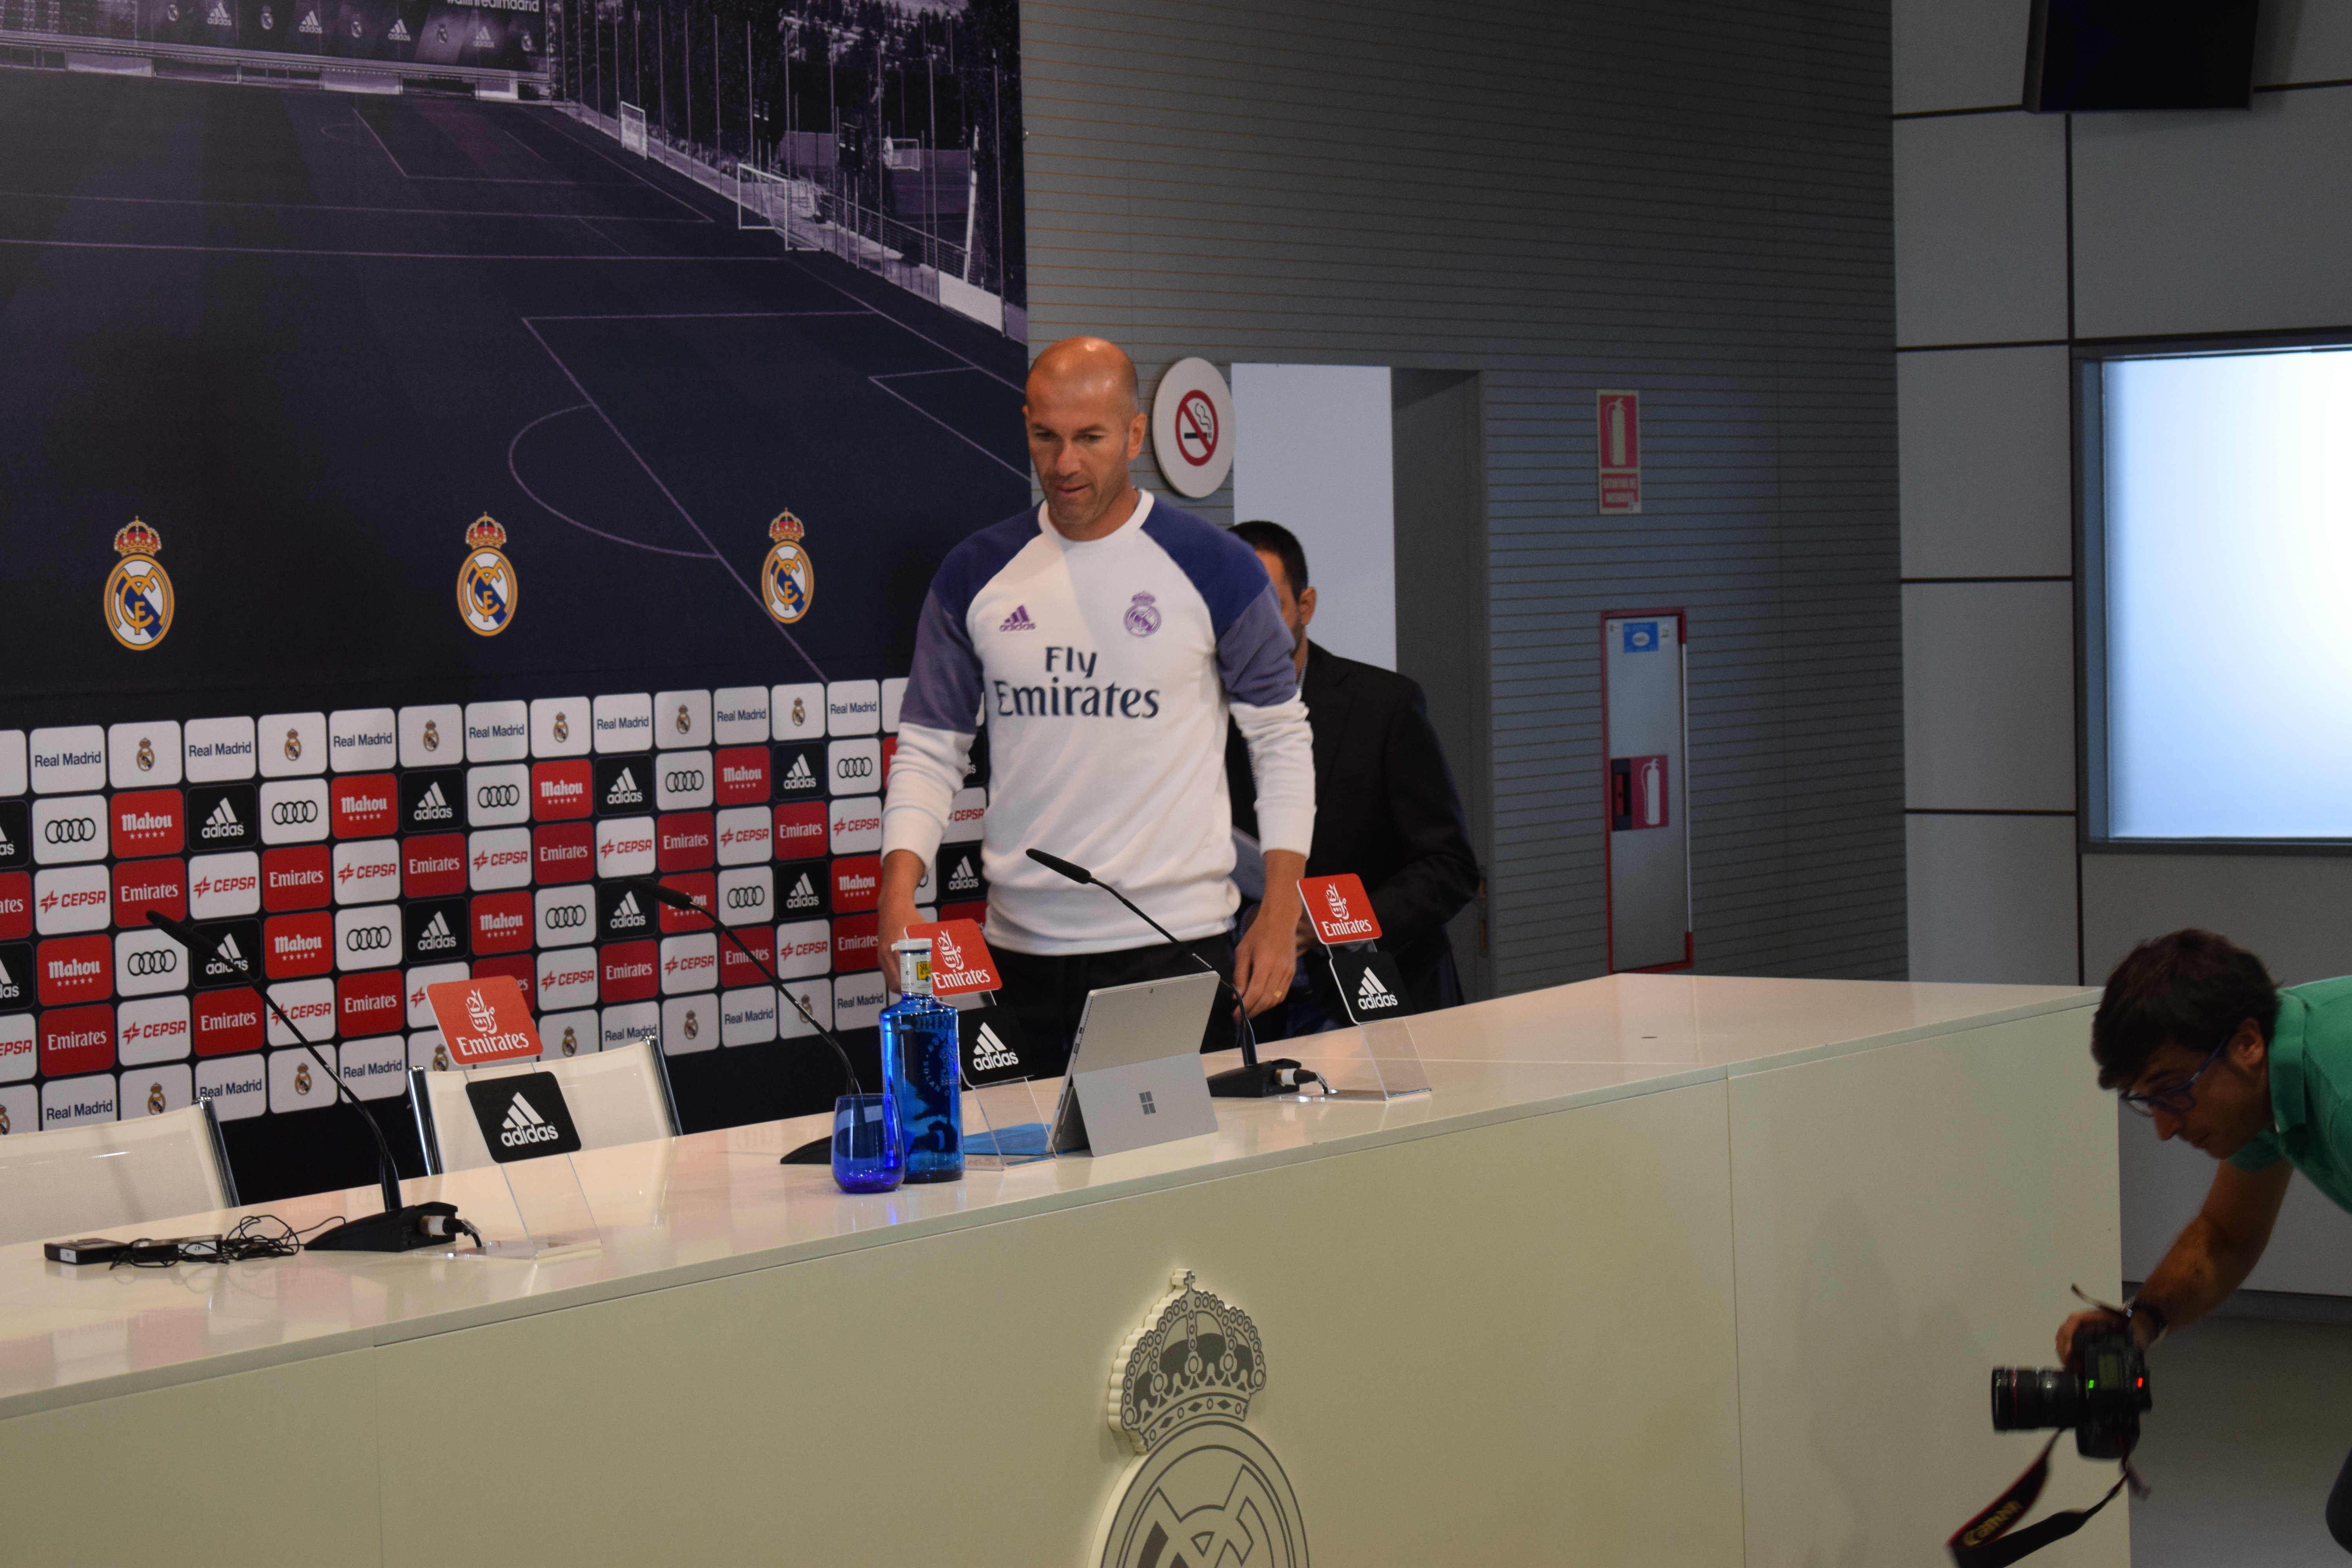 Zidane, entrenador del Real Madrid